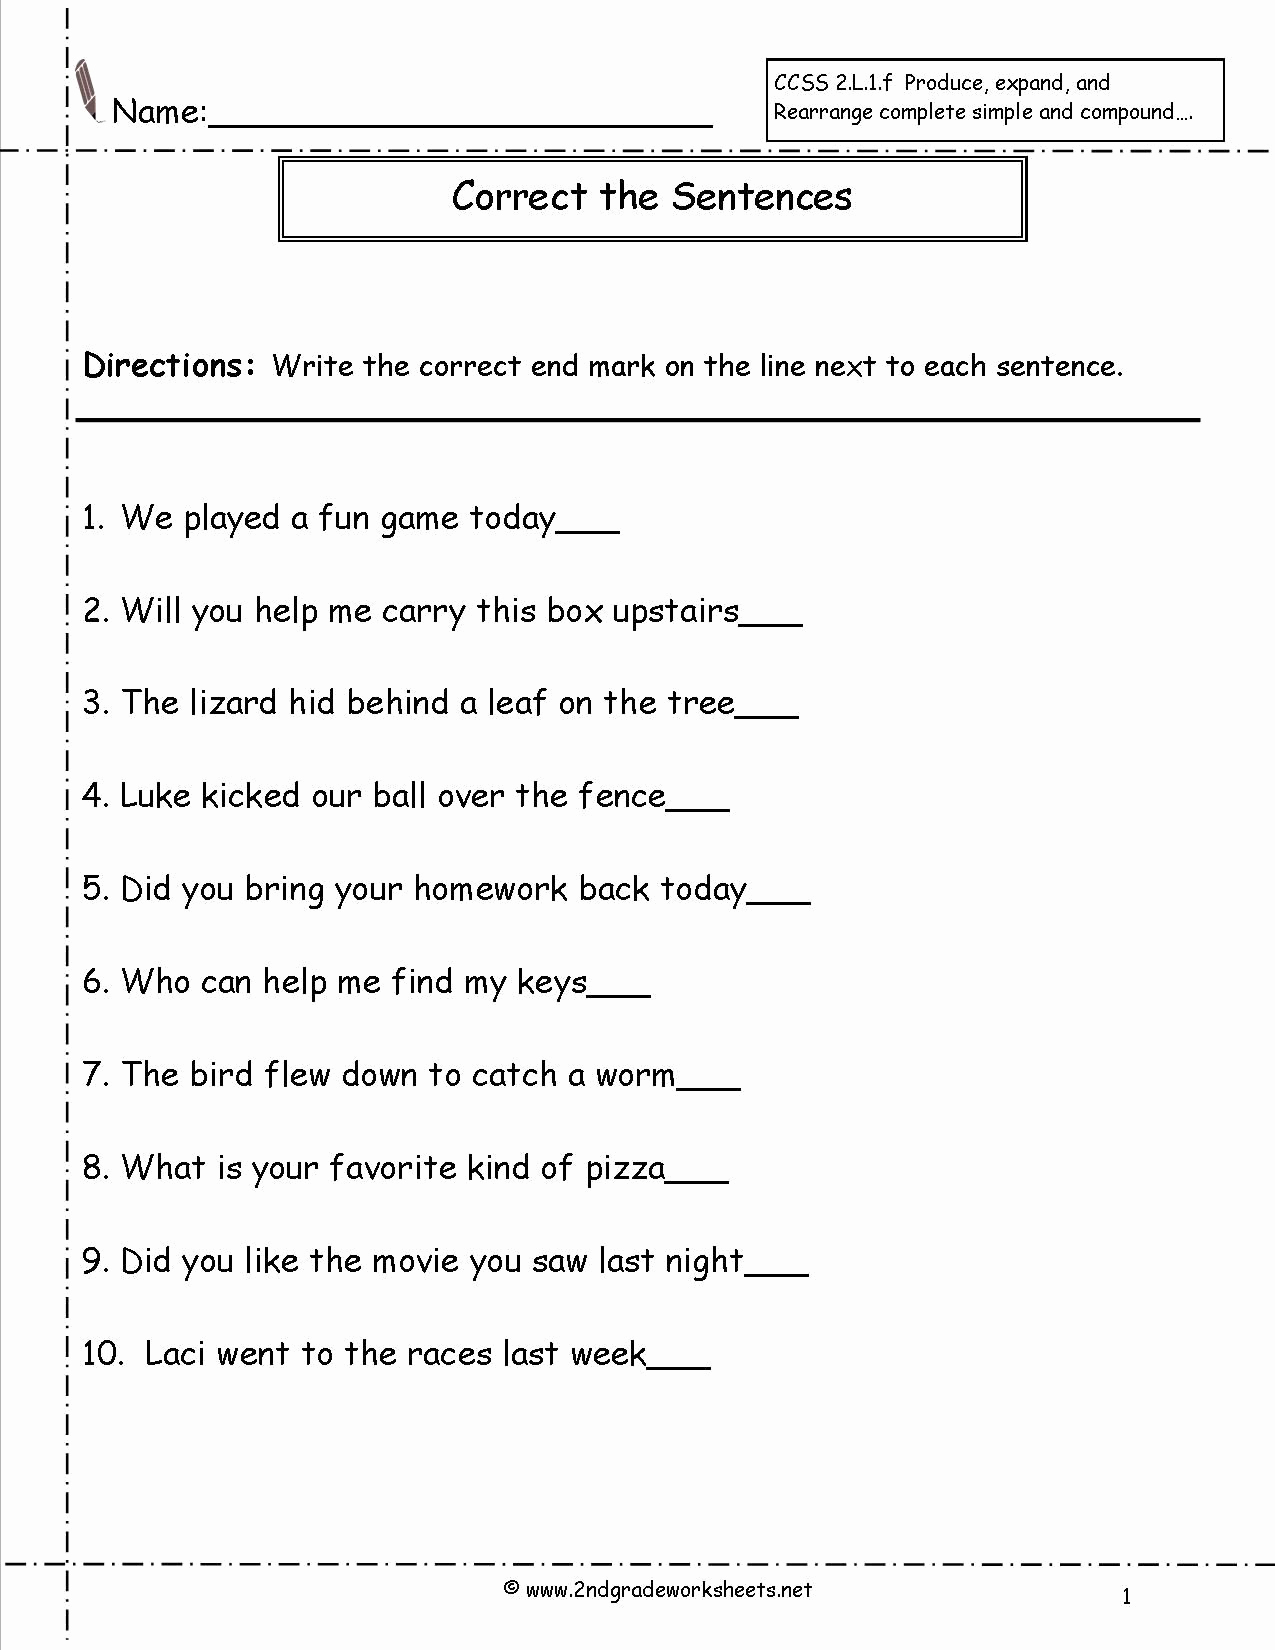 Context Clues Worksheets Second Grade Unique 20 Context Clues Worksheets Second Grade